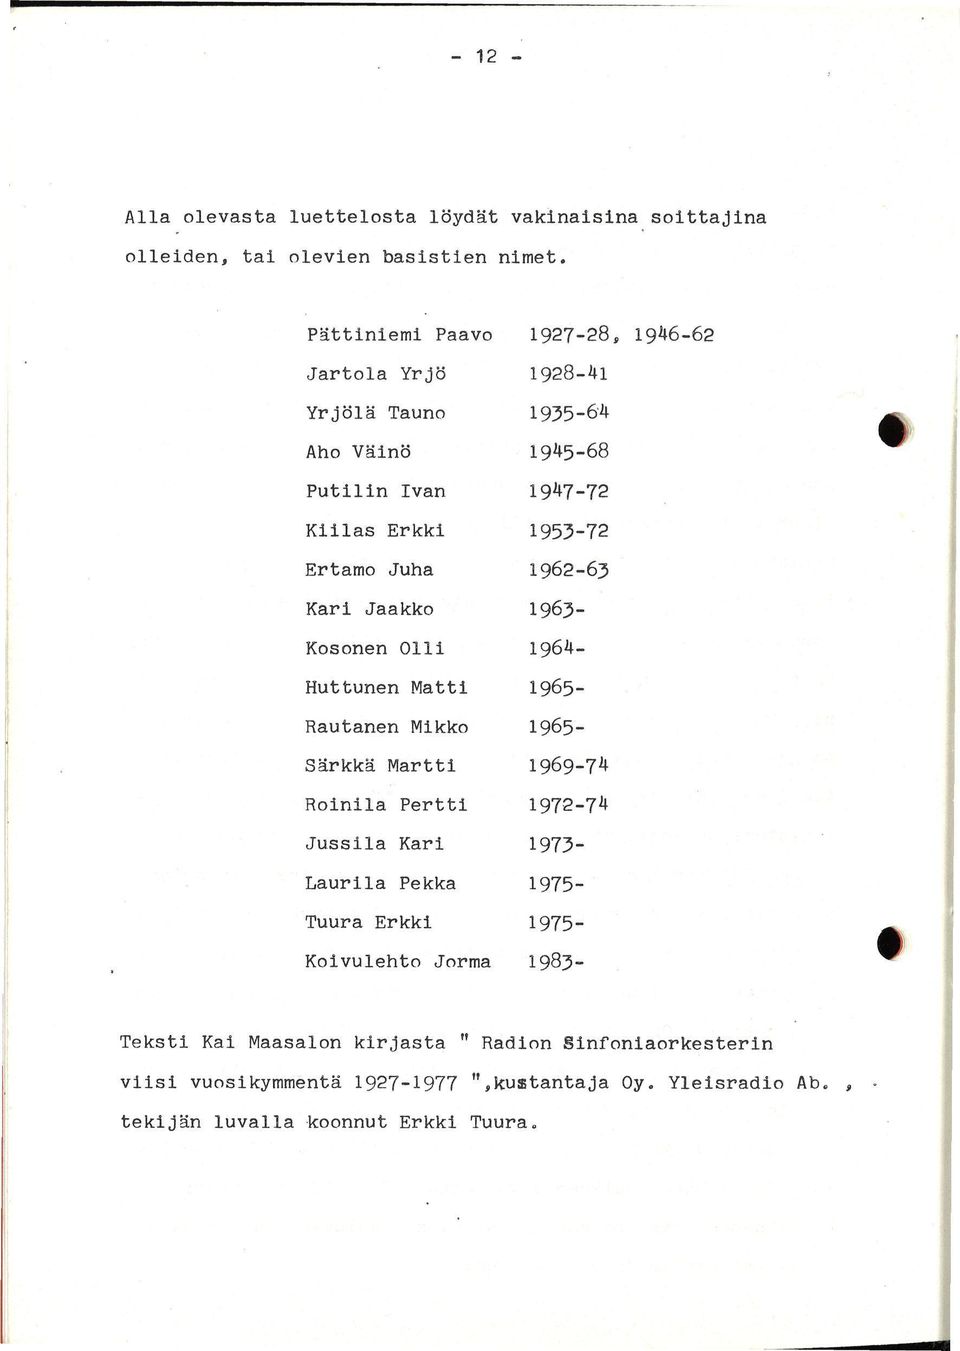 1962-63 Kari Jaakko 1963- Kosonen Olli 1964- Huttunen Matti 1965- Rautanen Mikko 1965- Särkkä Martti 1969-74 Roinila Pertti 1972-74 Jussila Kari 1973-